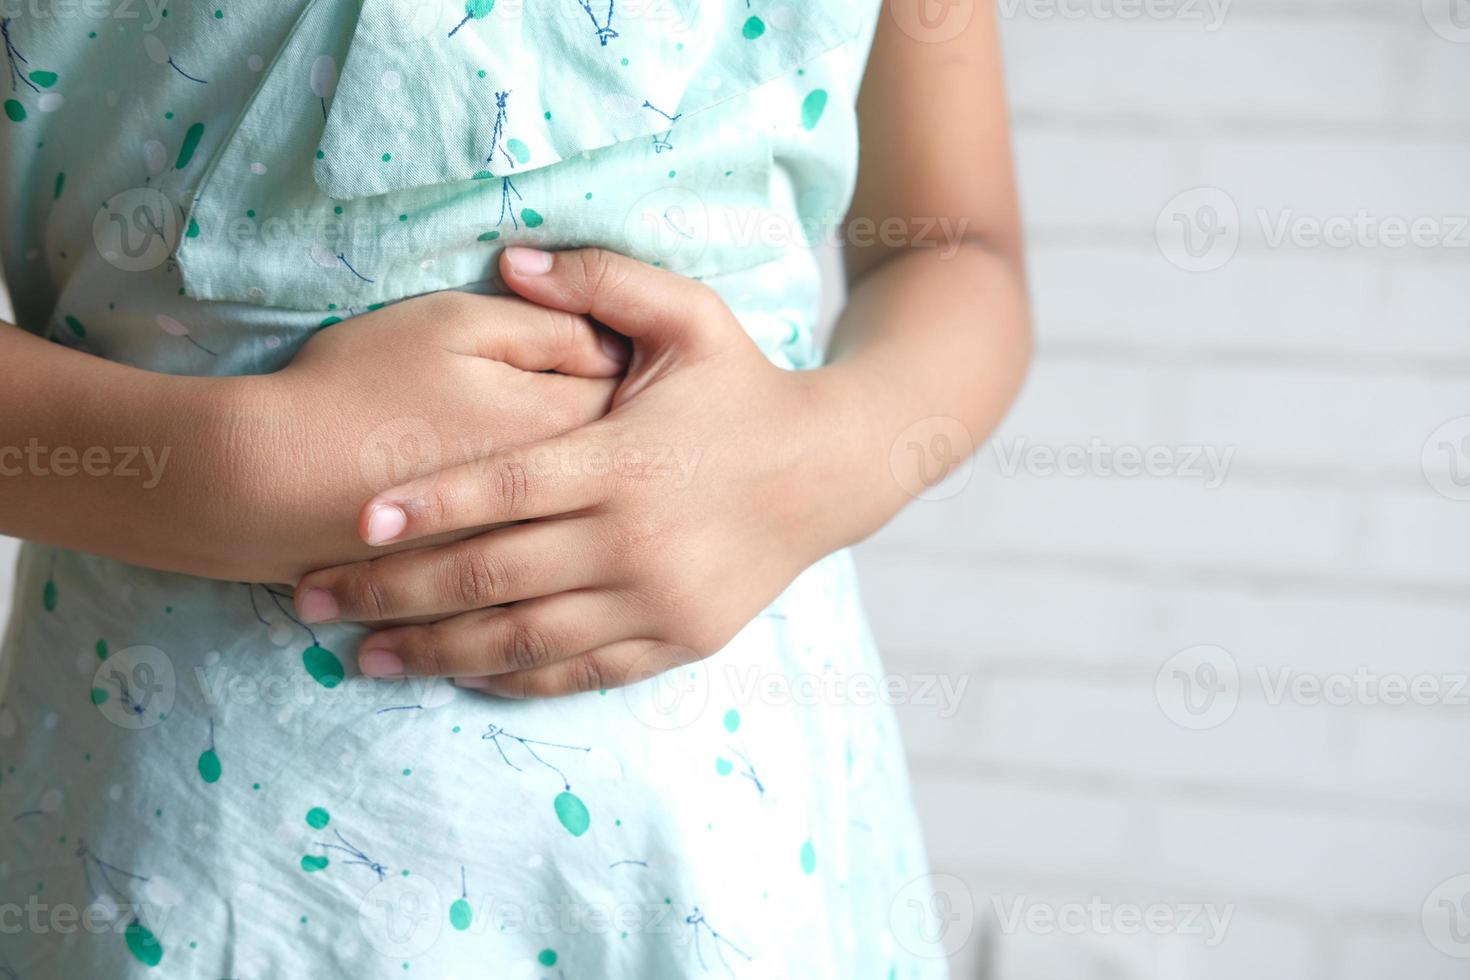 barn som lider av magsmärta på nära håll foto